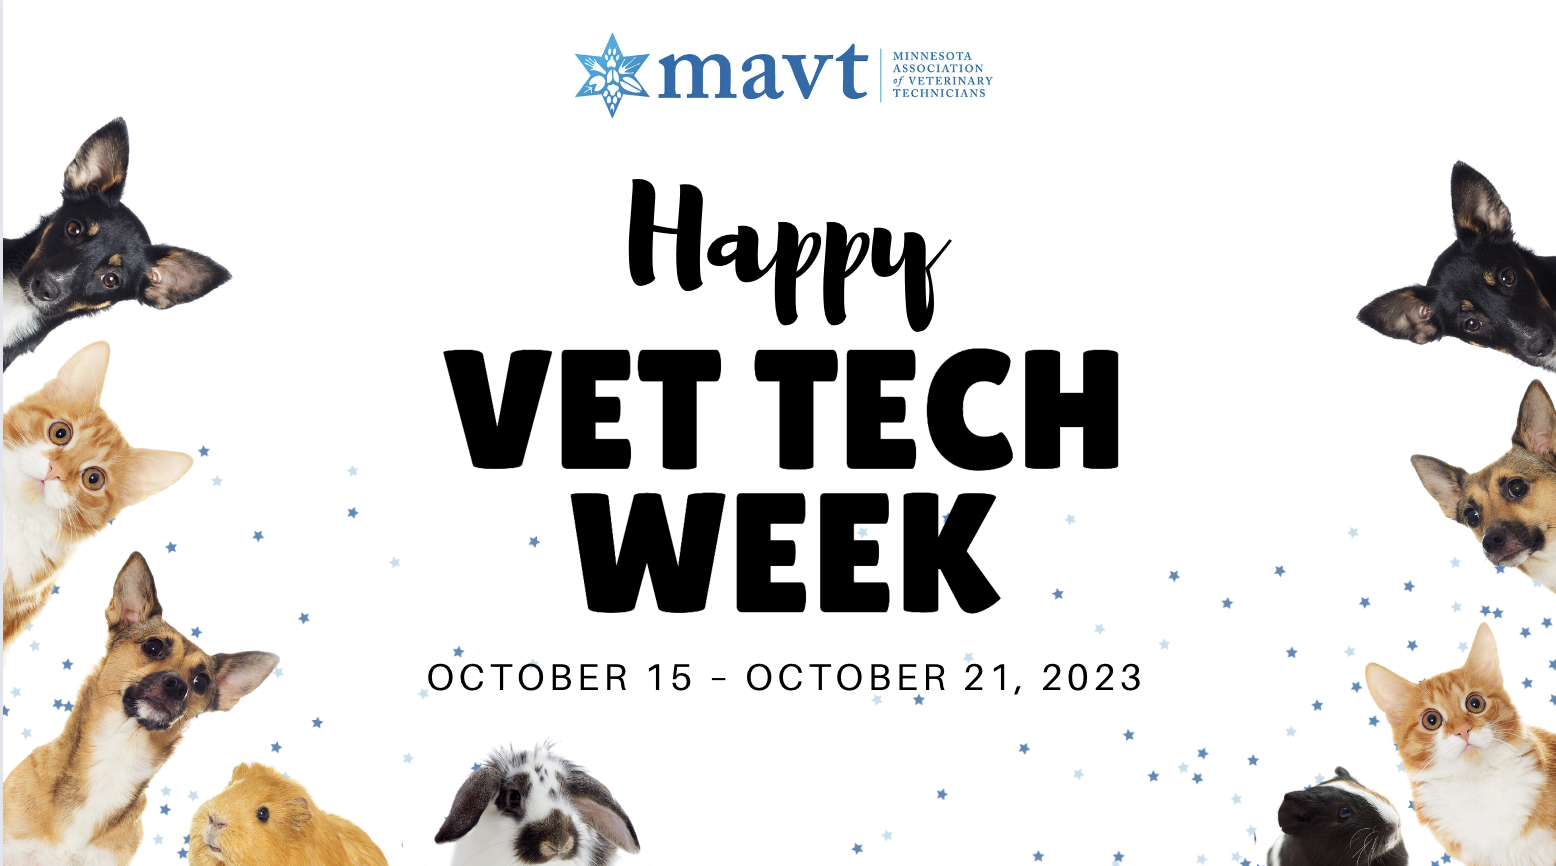 Vet Tech Week Events Minnesota Association of Veterinary Technicians